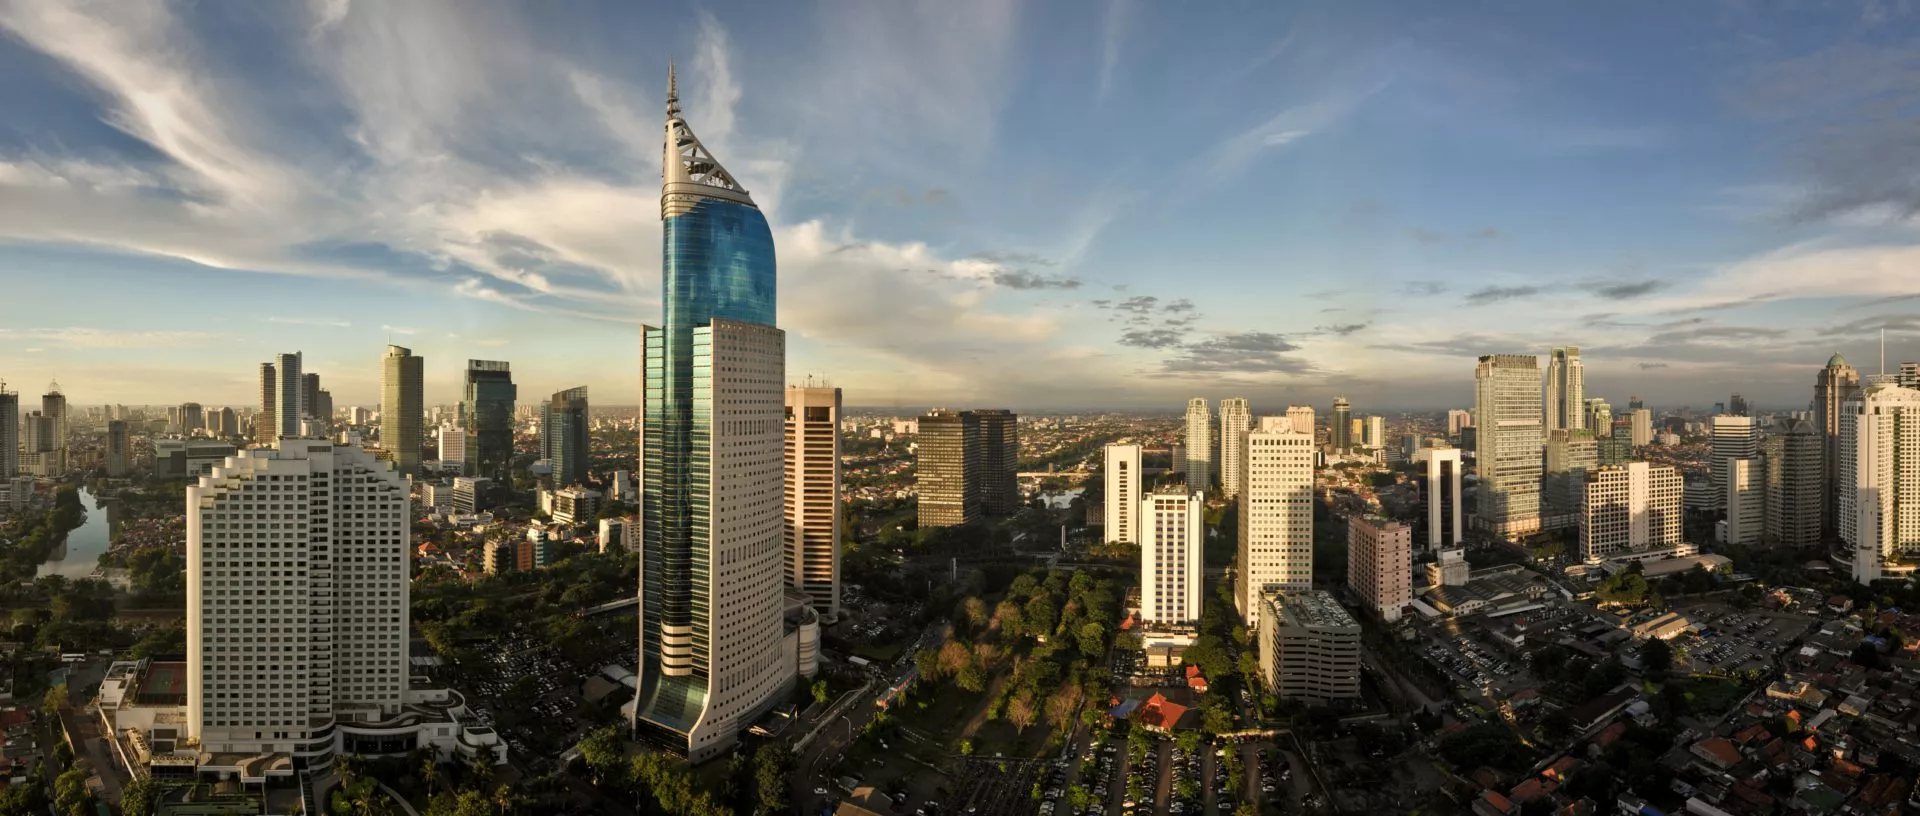 Jakarta (Indonesia) City Skyline